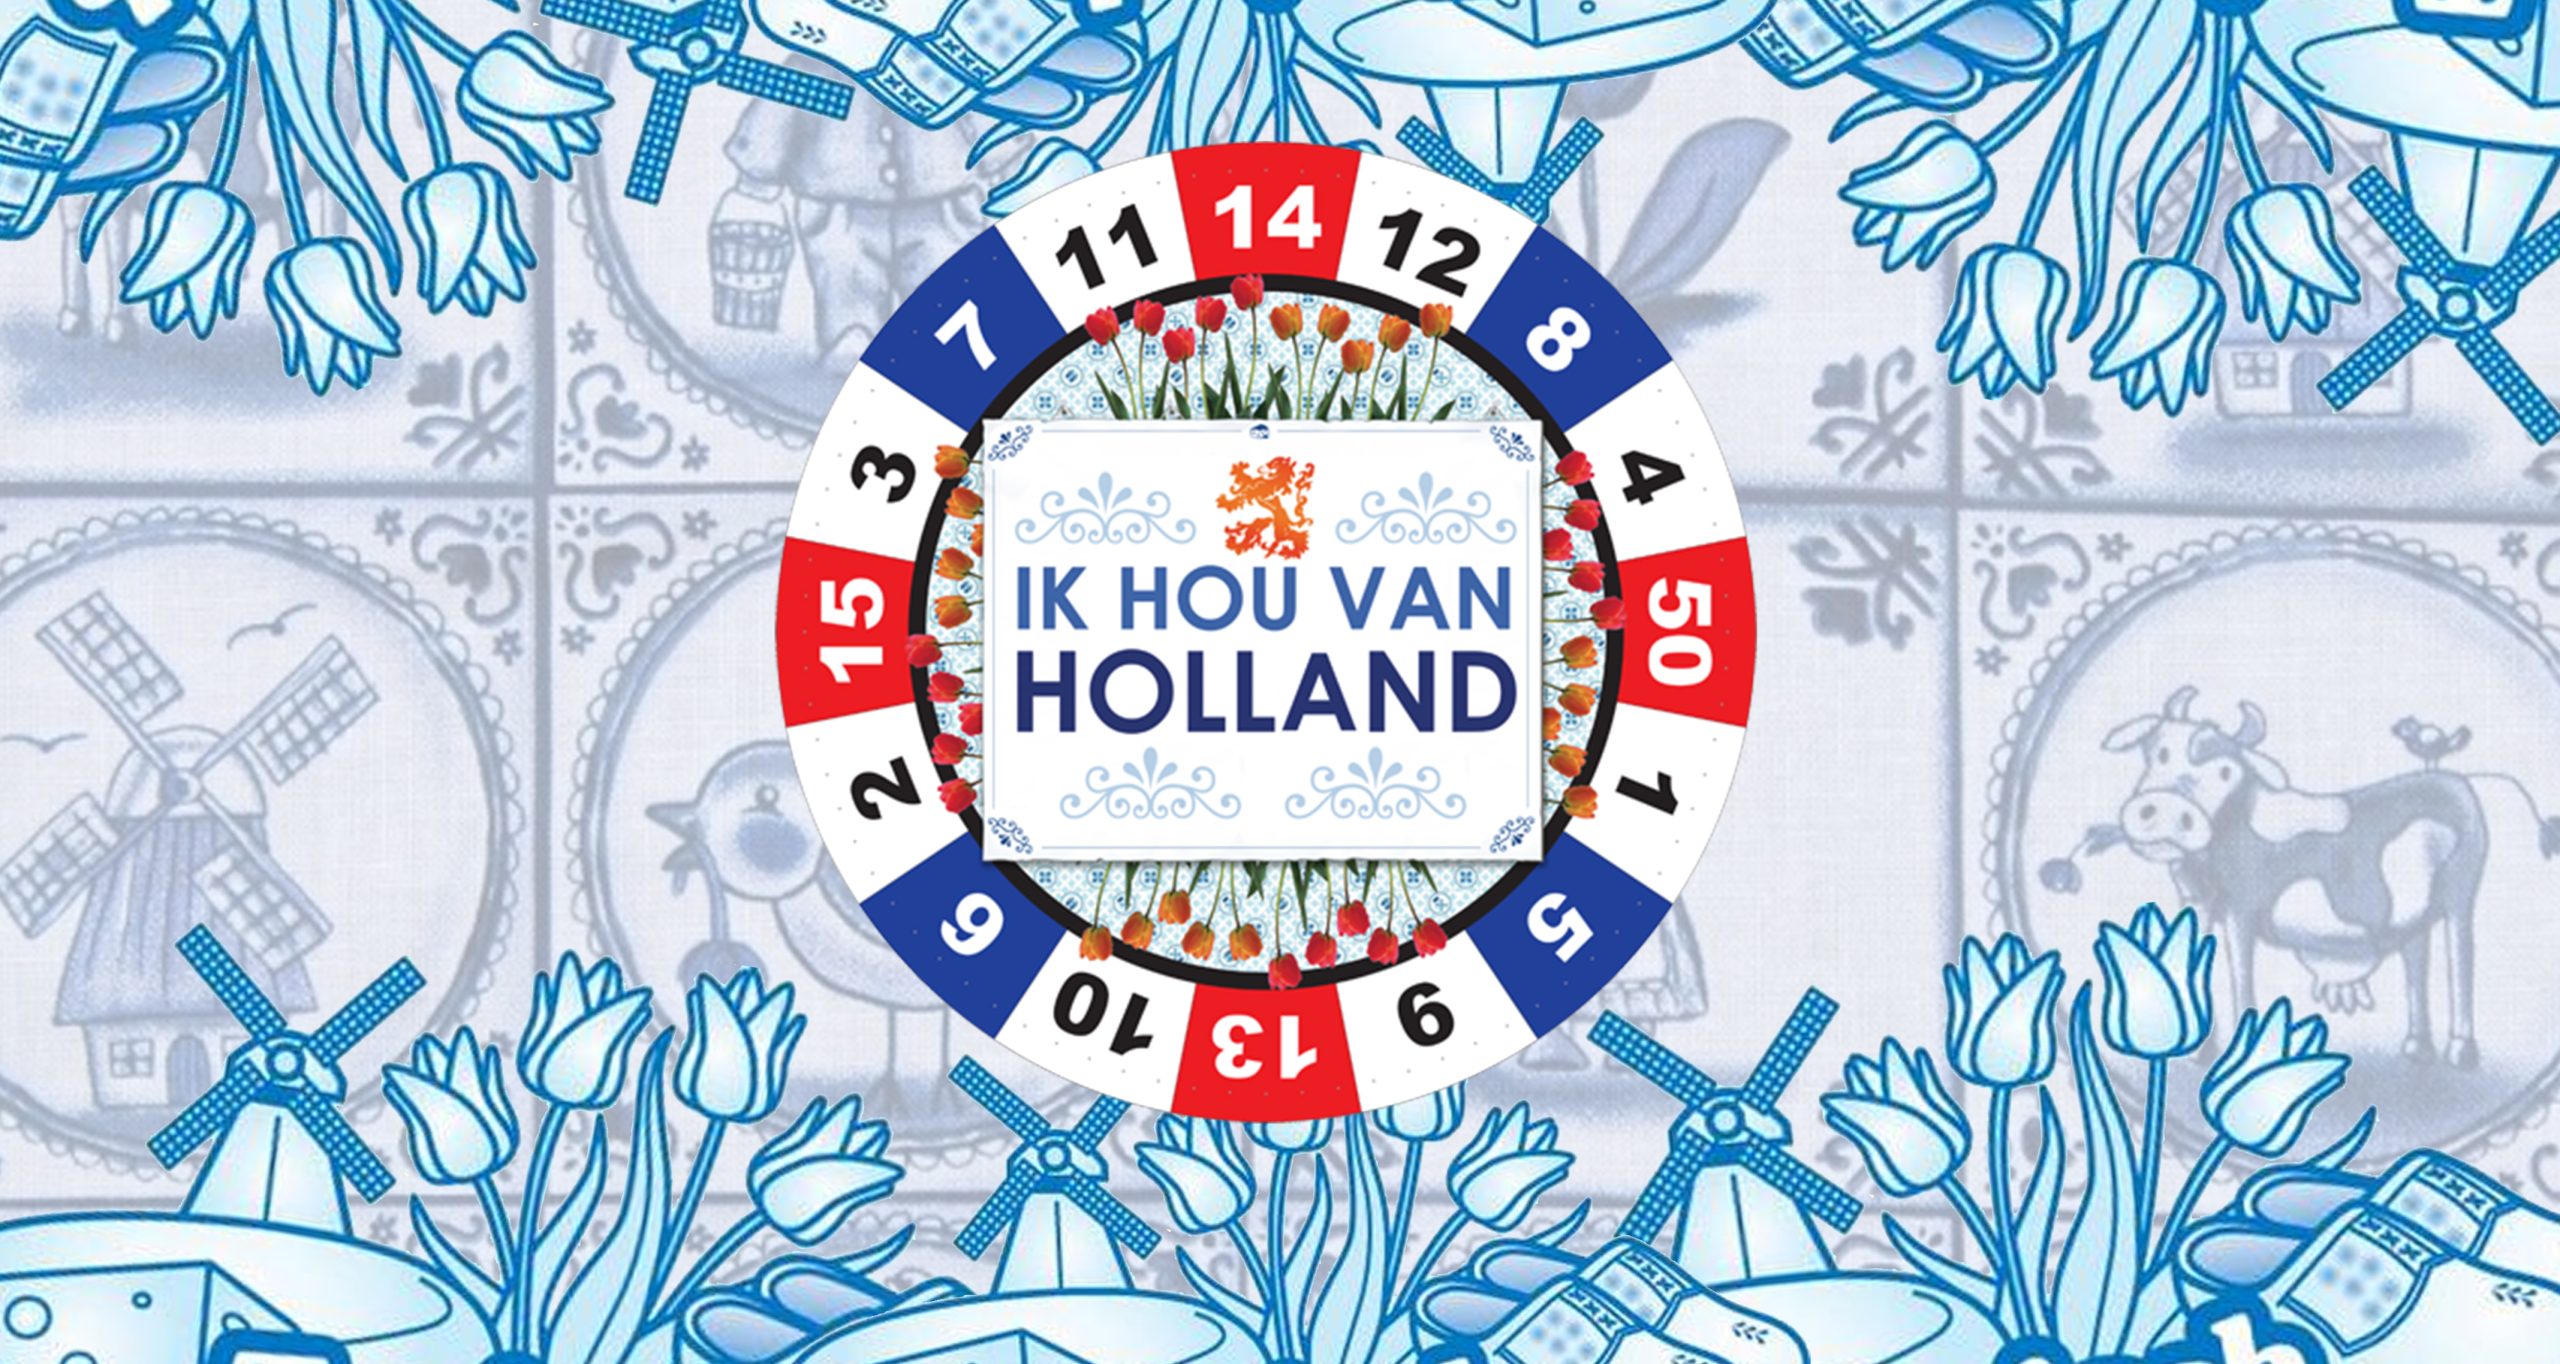 Bedrijfsuitje IJmuiden: Ik Hou Van Holland in de stad